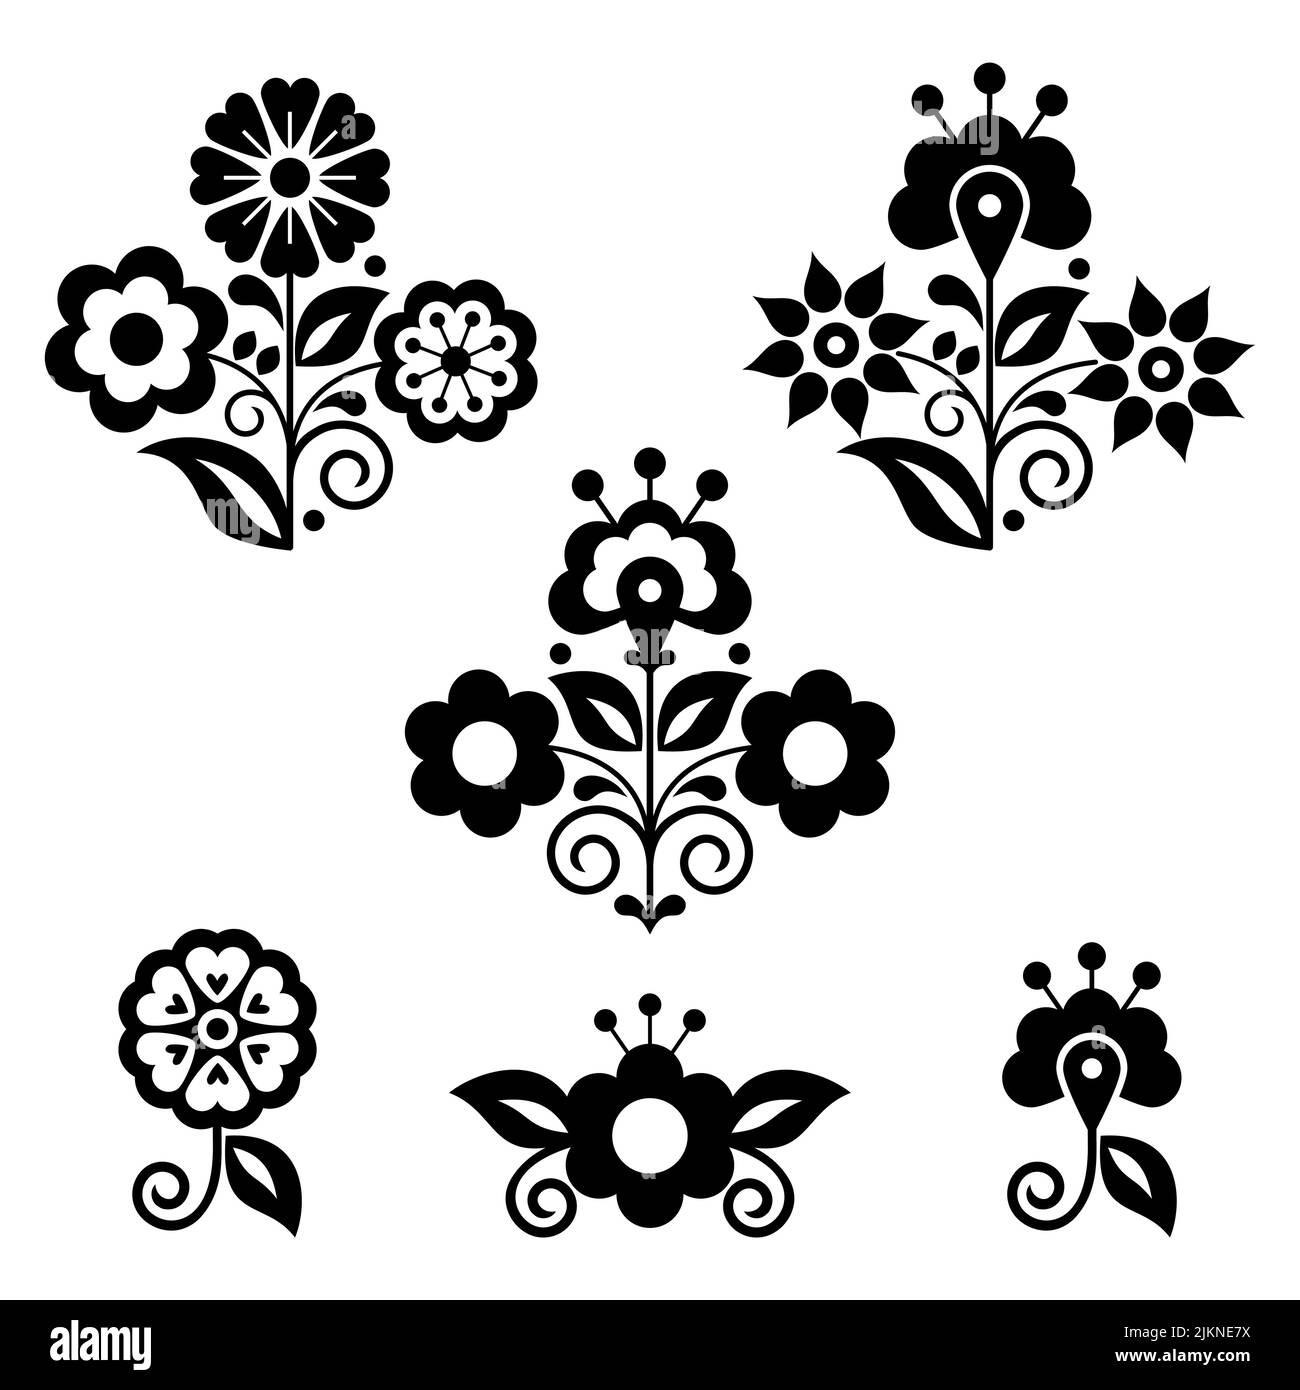 Éléments de décoration florale vectoriels de style art folklorique mexicain, collection rétro inspirée de la broderie traditionnelle en noir et blanc Illustration de Vecteur